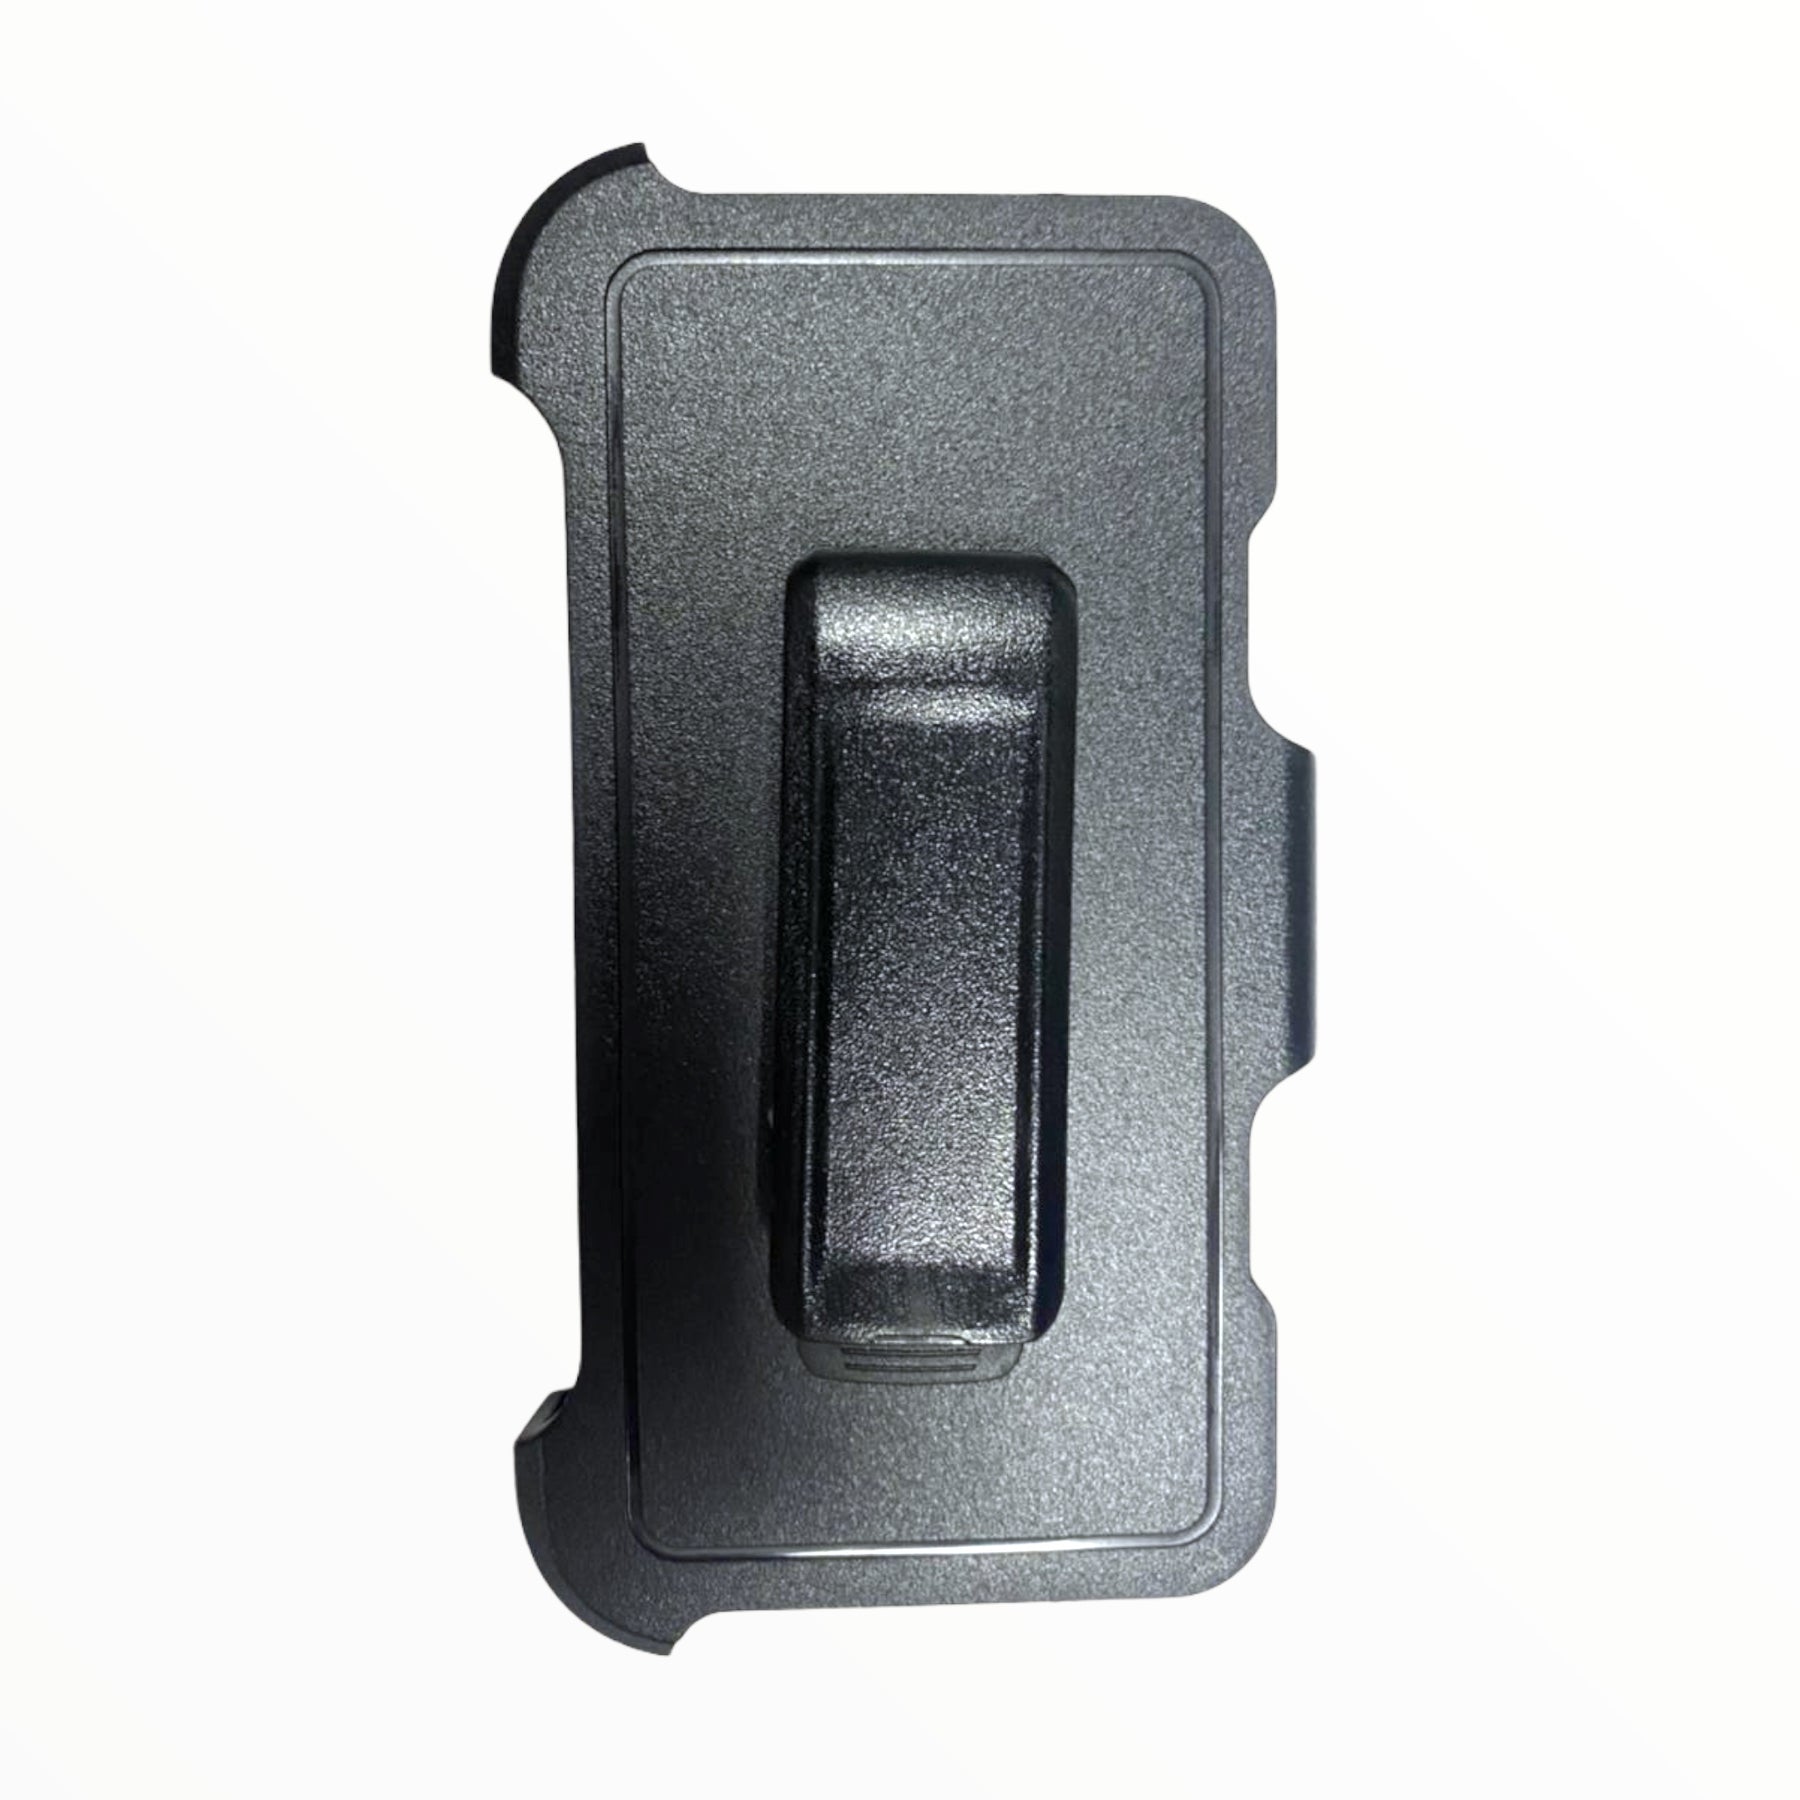 Accesorio el rey clip para estuches otterbox o defender iphone x / xs (5.8) color negro